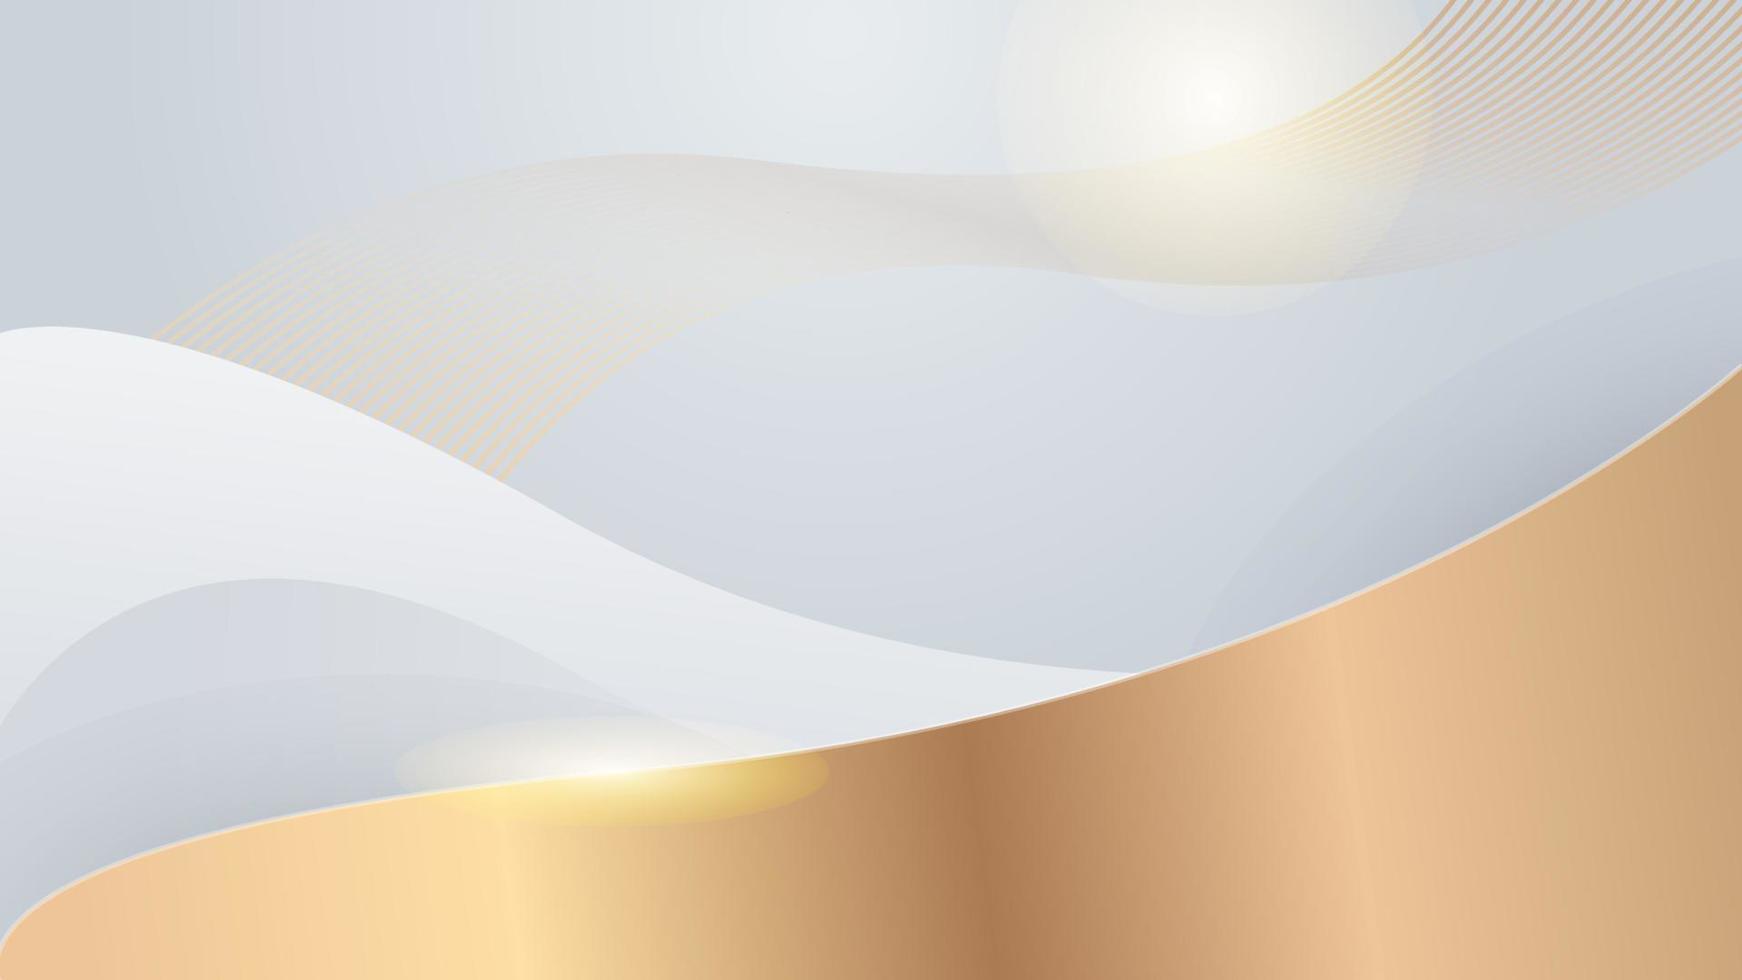 fundo branco e dourado com elementos de decoração de formas geométricas abstratas de luxo para design de apresentação, cartão de visita, design de casamento vetor